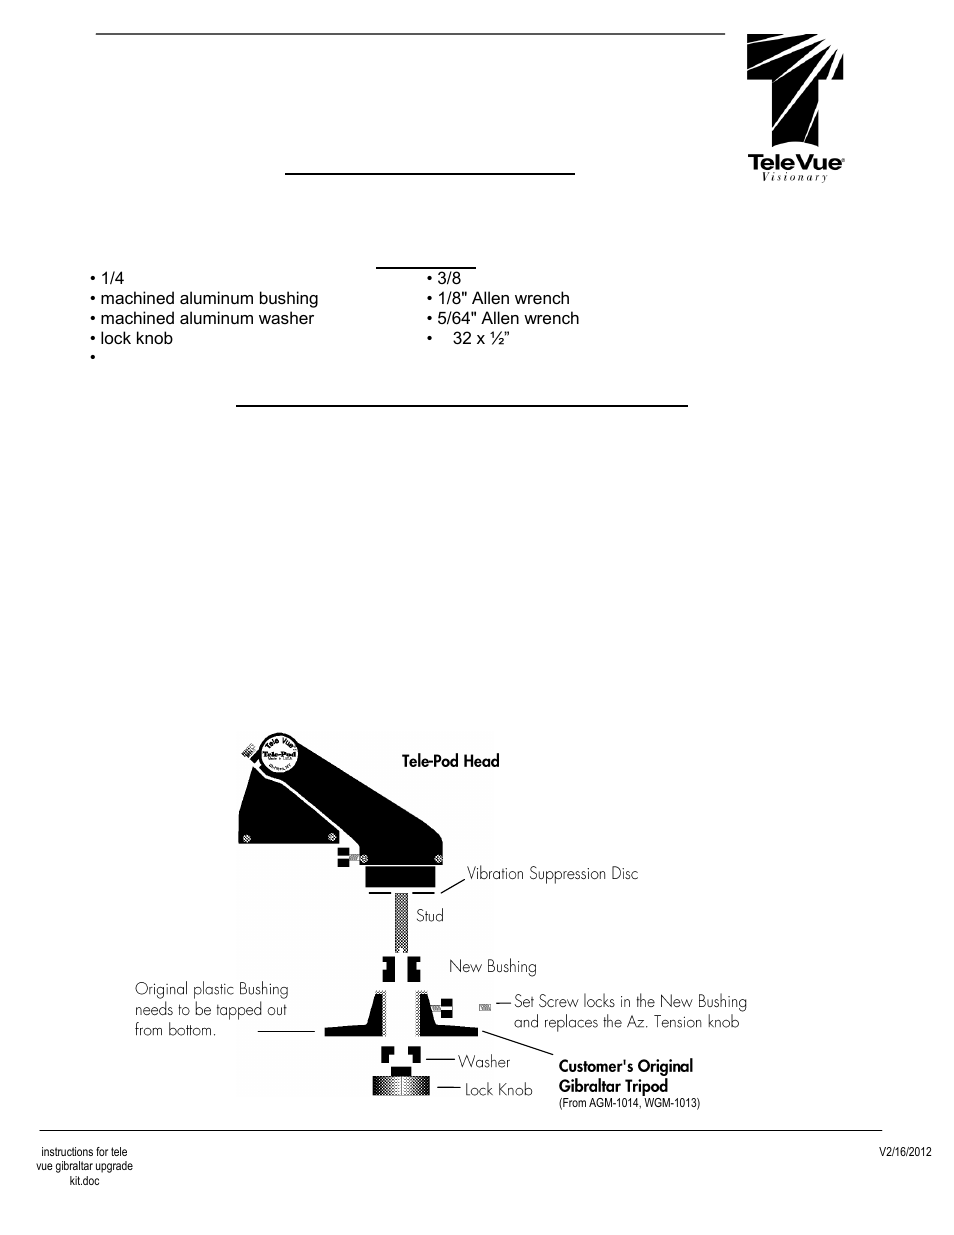 Tele Vue Gibraltar Upgrade Kit (GUK-1001) User Manual | 1 page